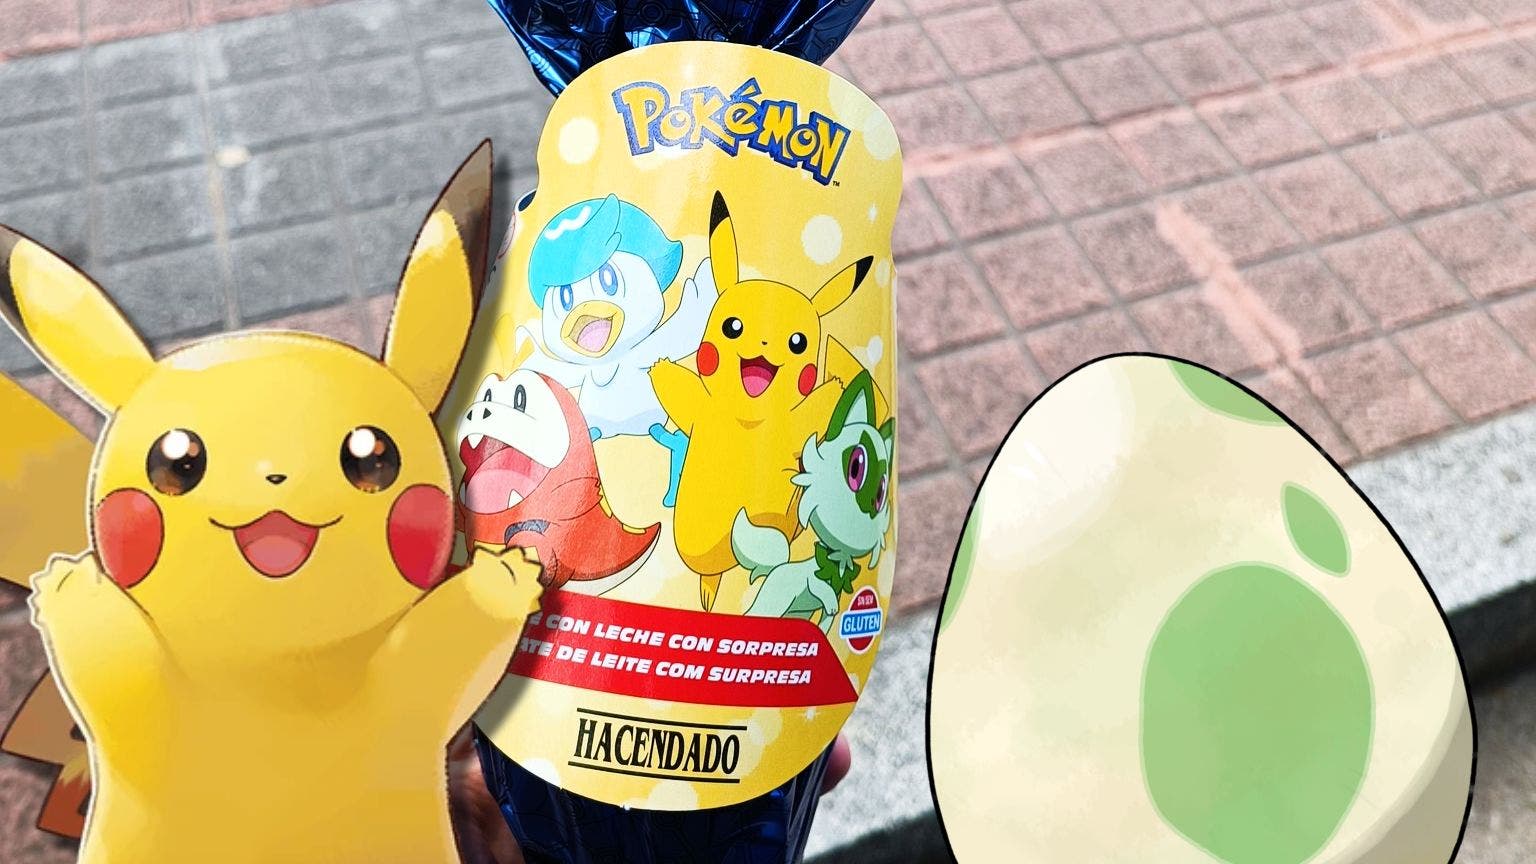 Los huevos de chocolate Pokémon llegan a Mercadona con sorpresa